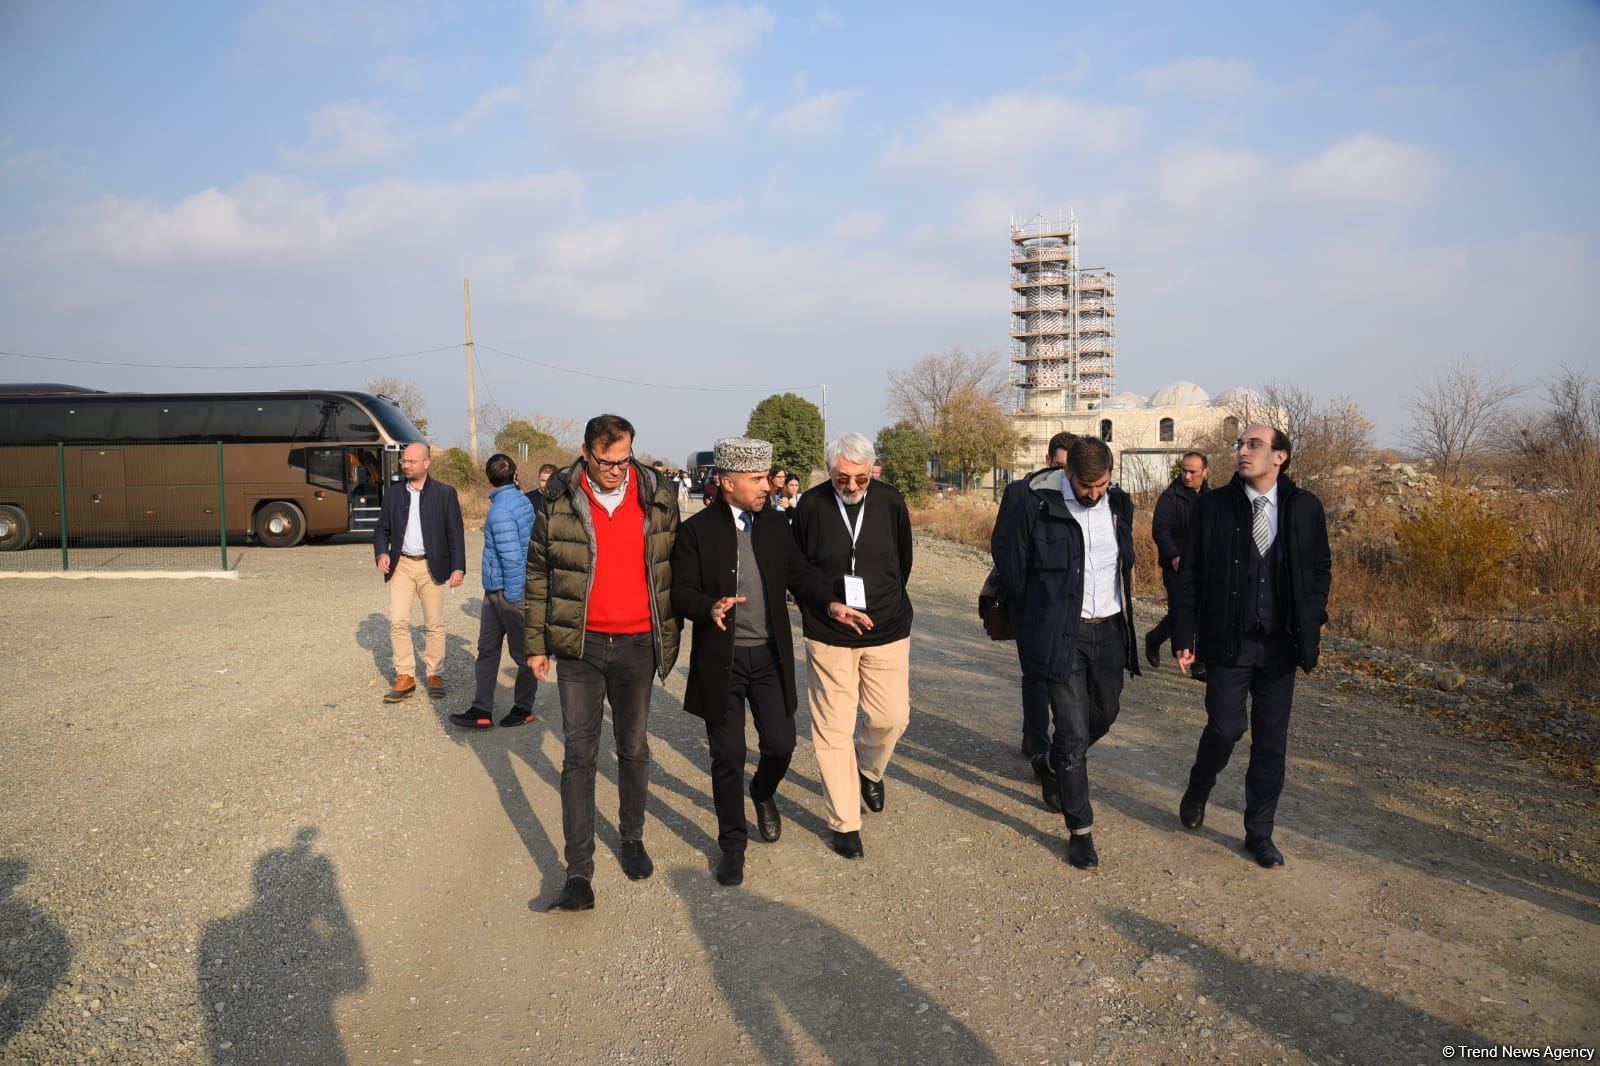 Участники бакинской международной конференции посетили Агдам (ФОТО)